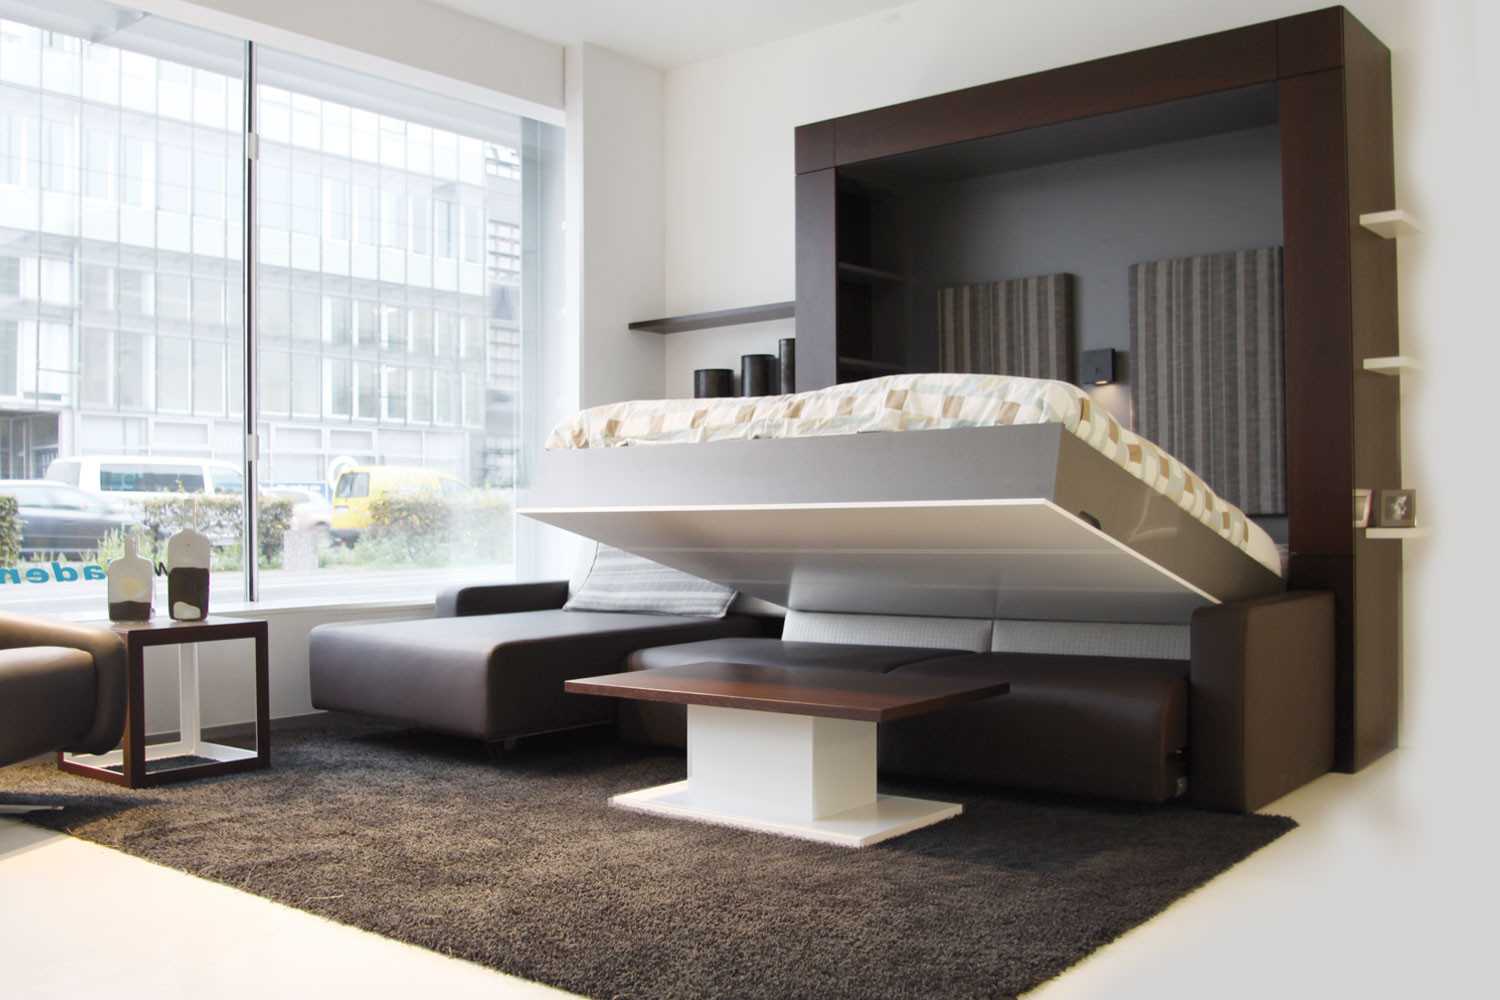 Существующие модели шкафов диванов кроватей трансформеров, в чем их удобство